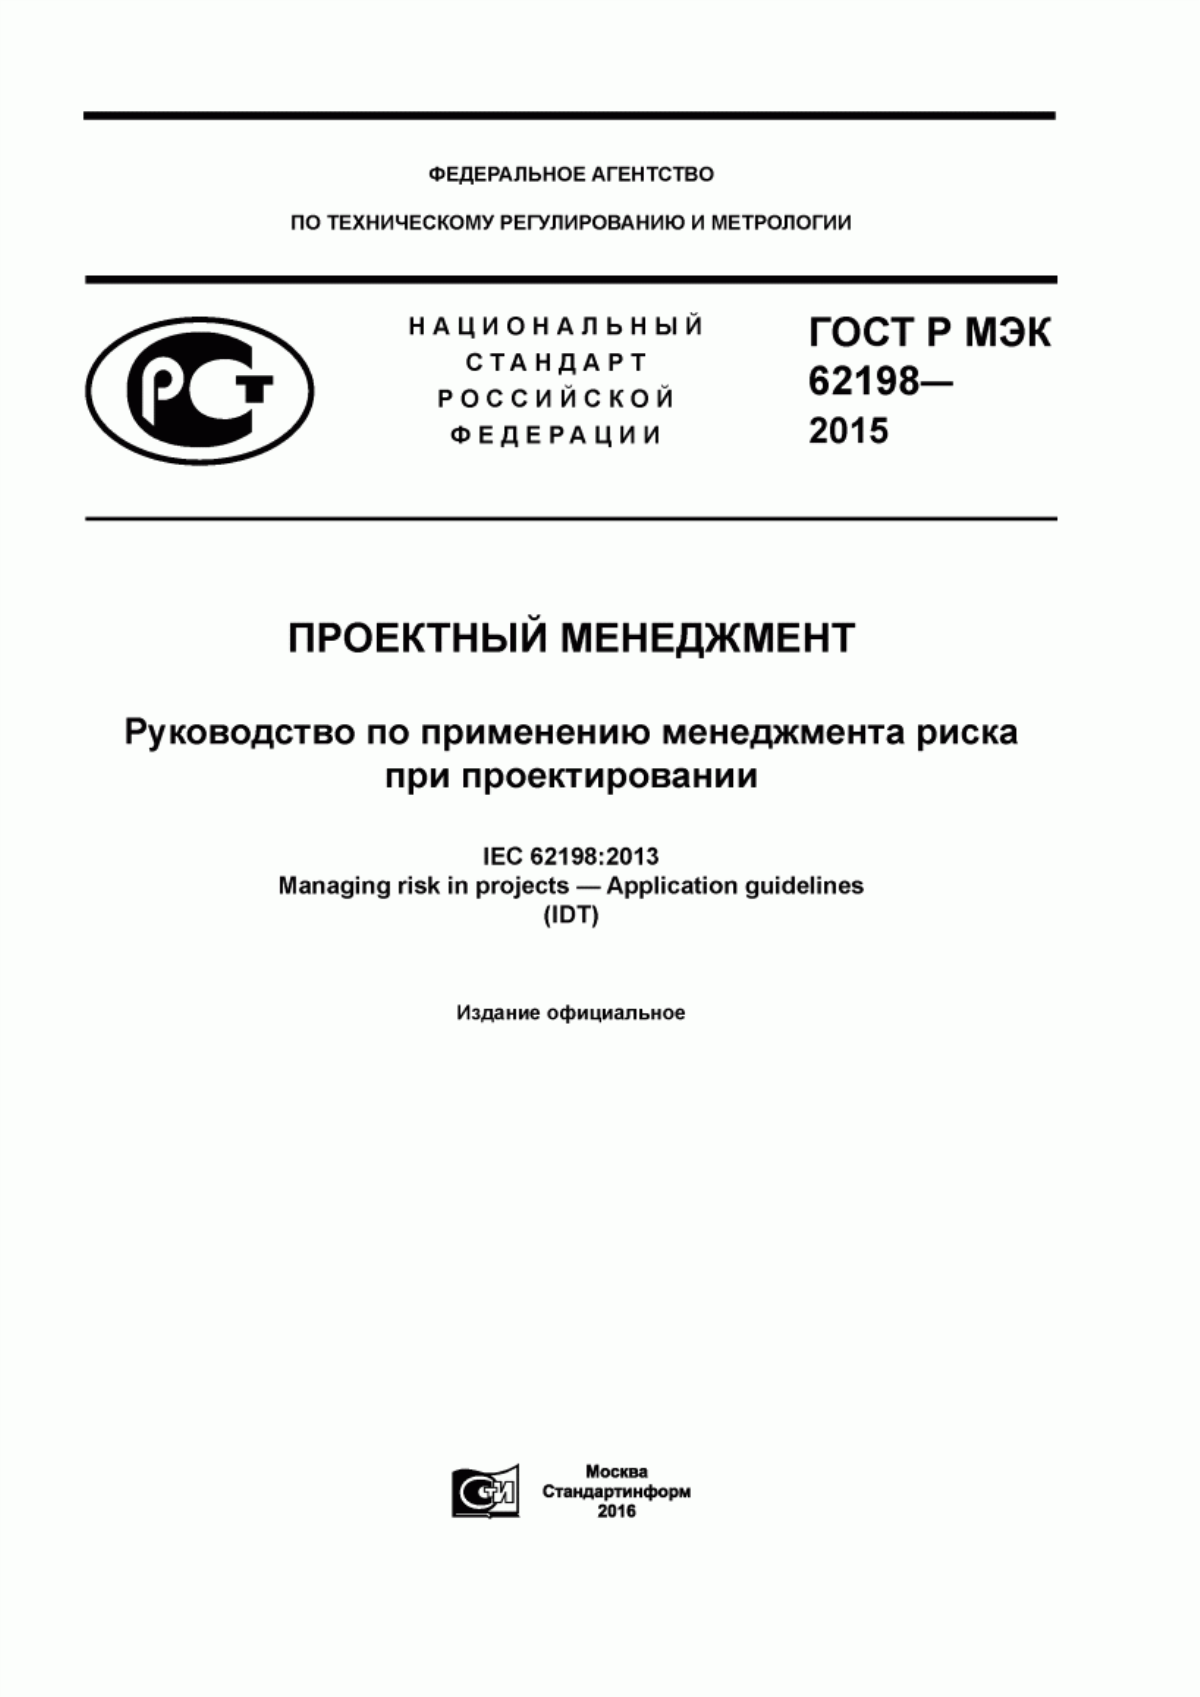 ГОСТ Р МЭК 62198-2015 Проектный менеджмент. Руководство по применению менеджмента риска при проектировании